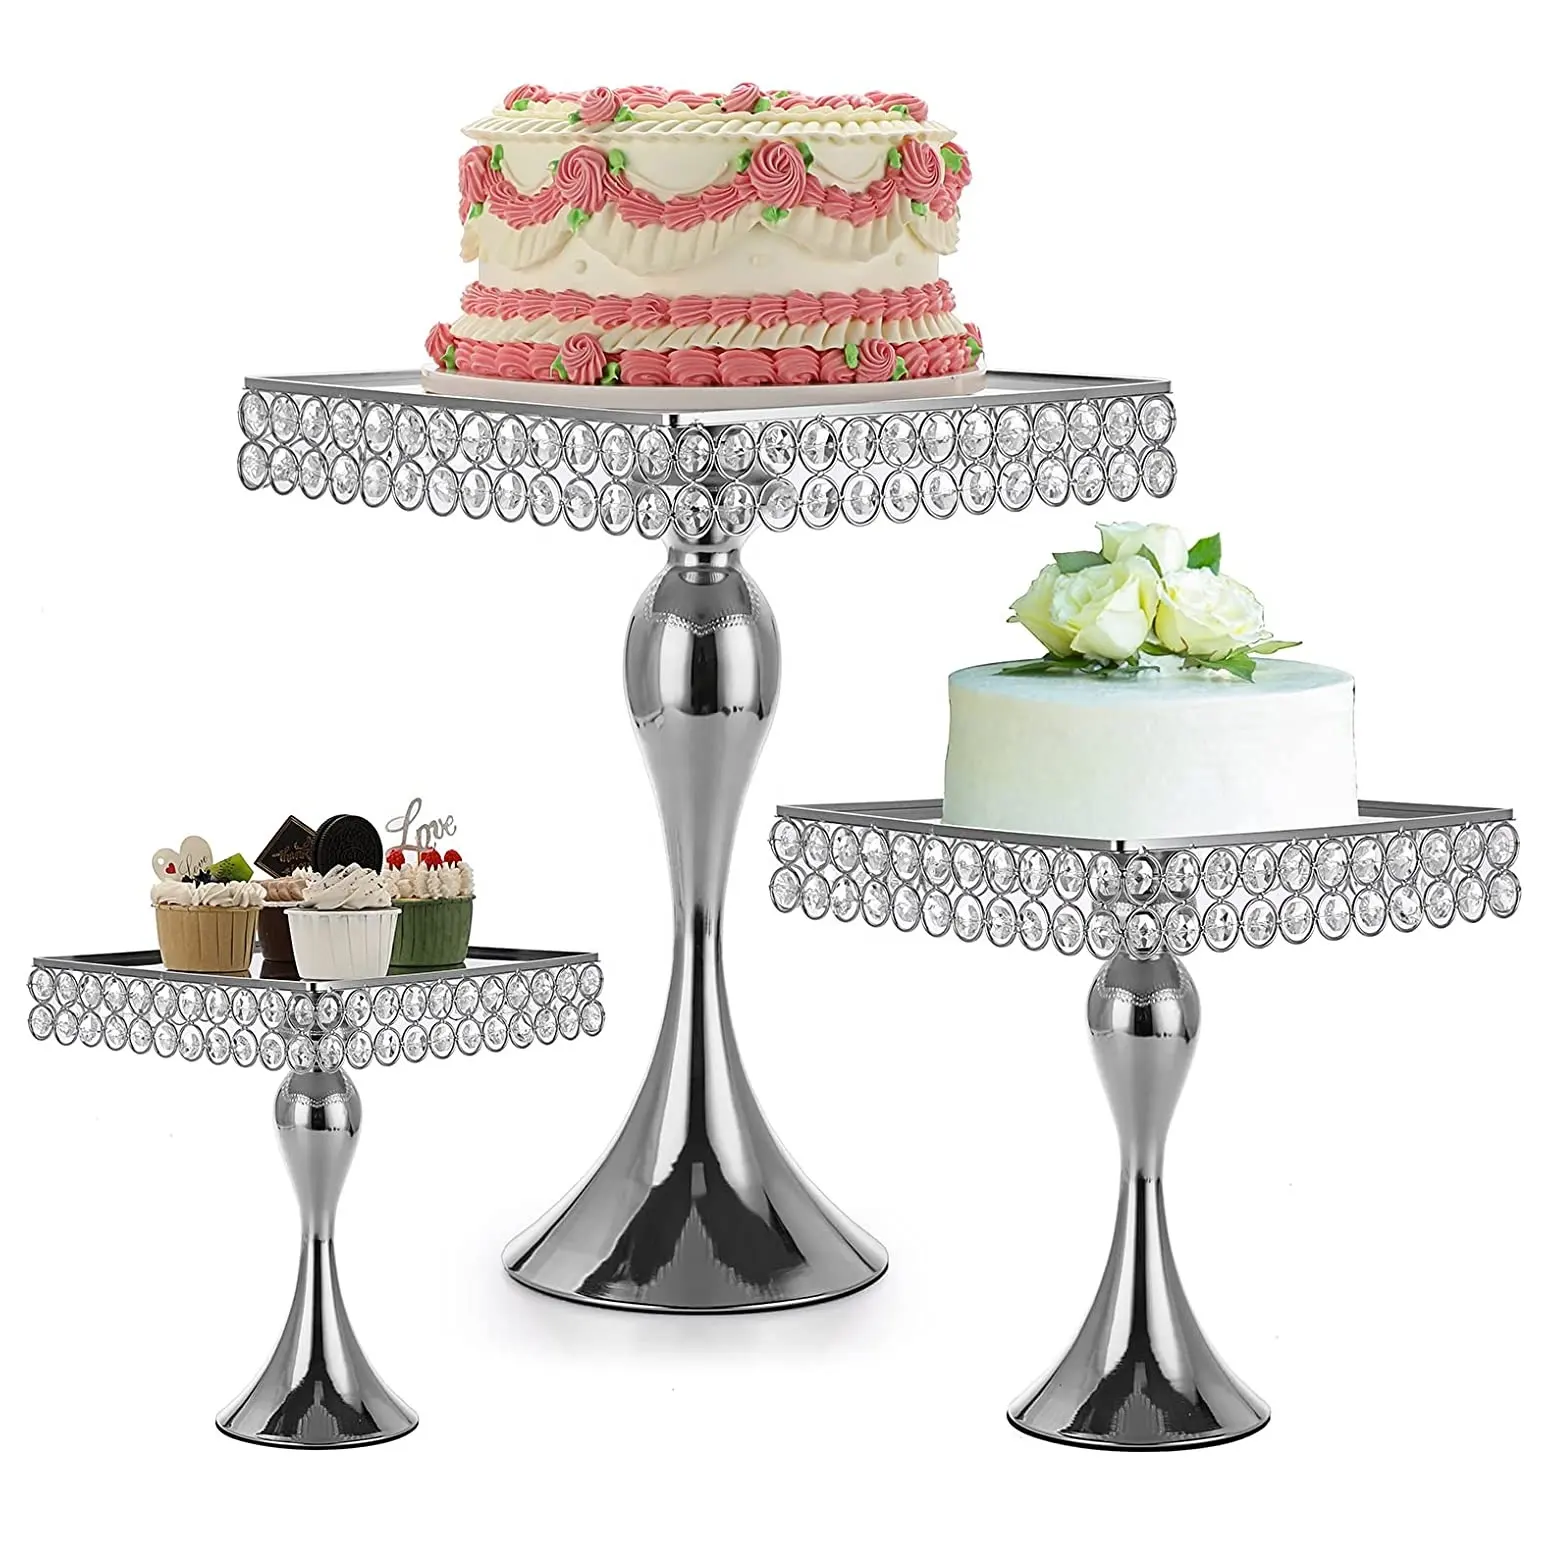 Soporte de pastel con parte superior de espejo con cuentas decorativas de plata brillante Soporte estructurado para servir y exhibir cupcakes en forma cuadrada